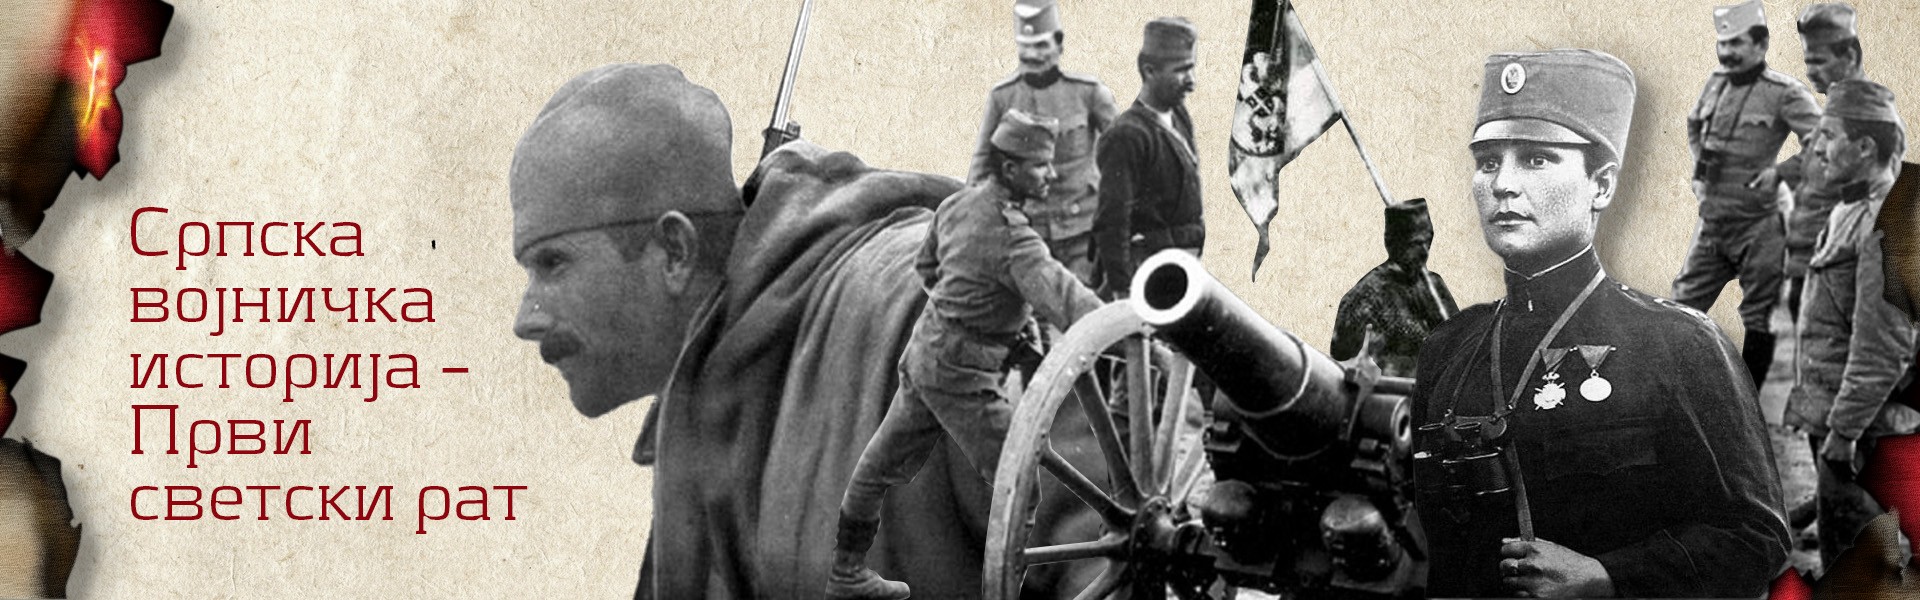 Војничка историја Србије - Први светски рат